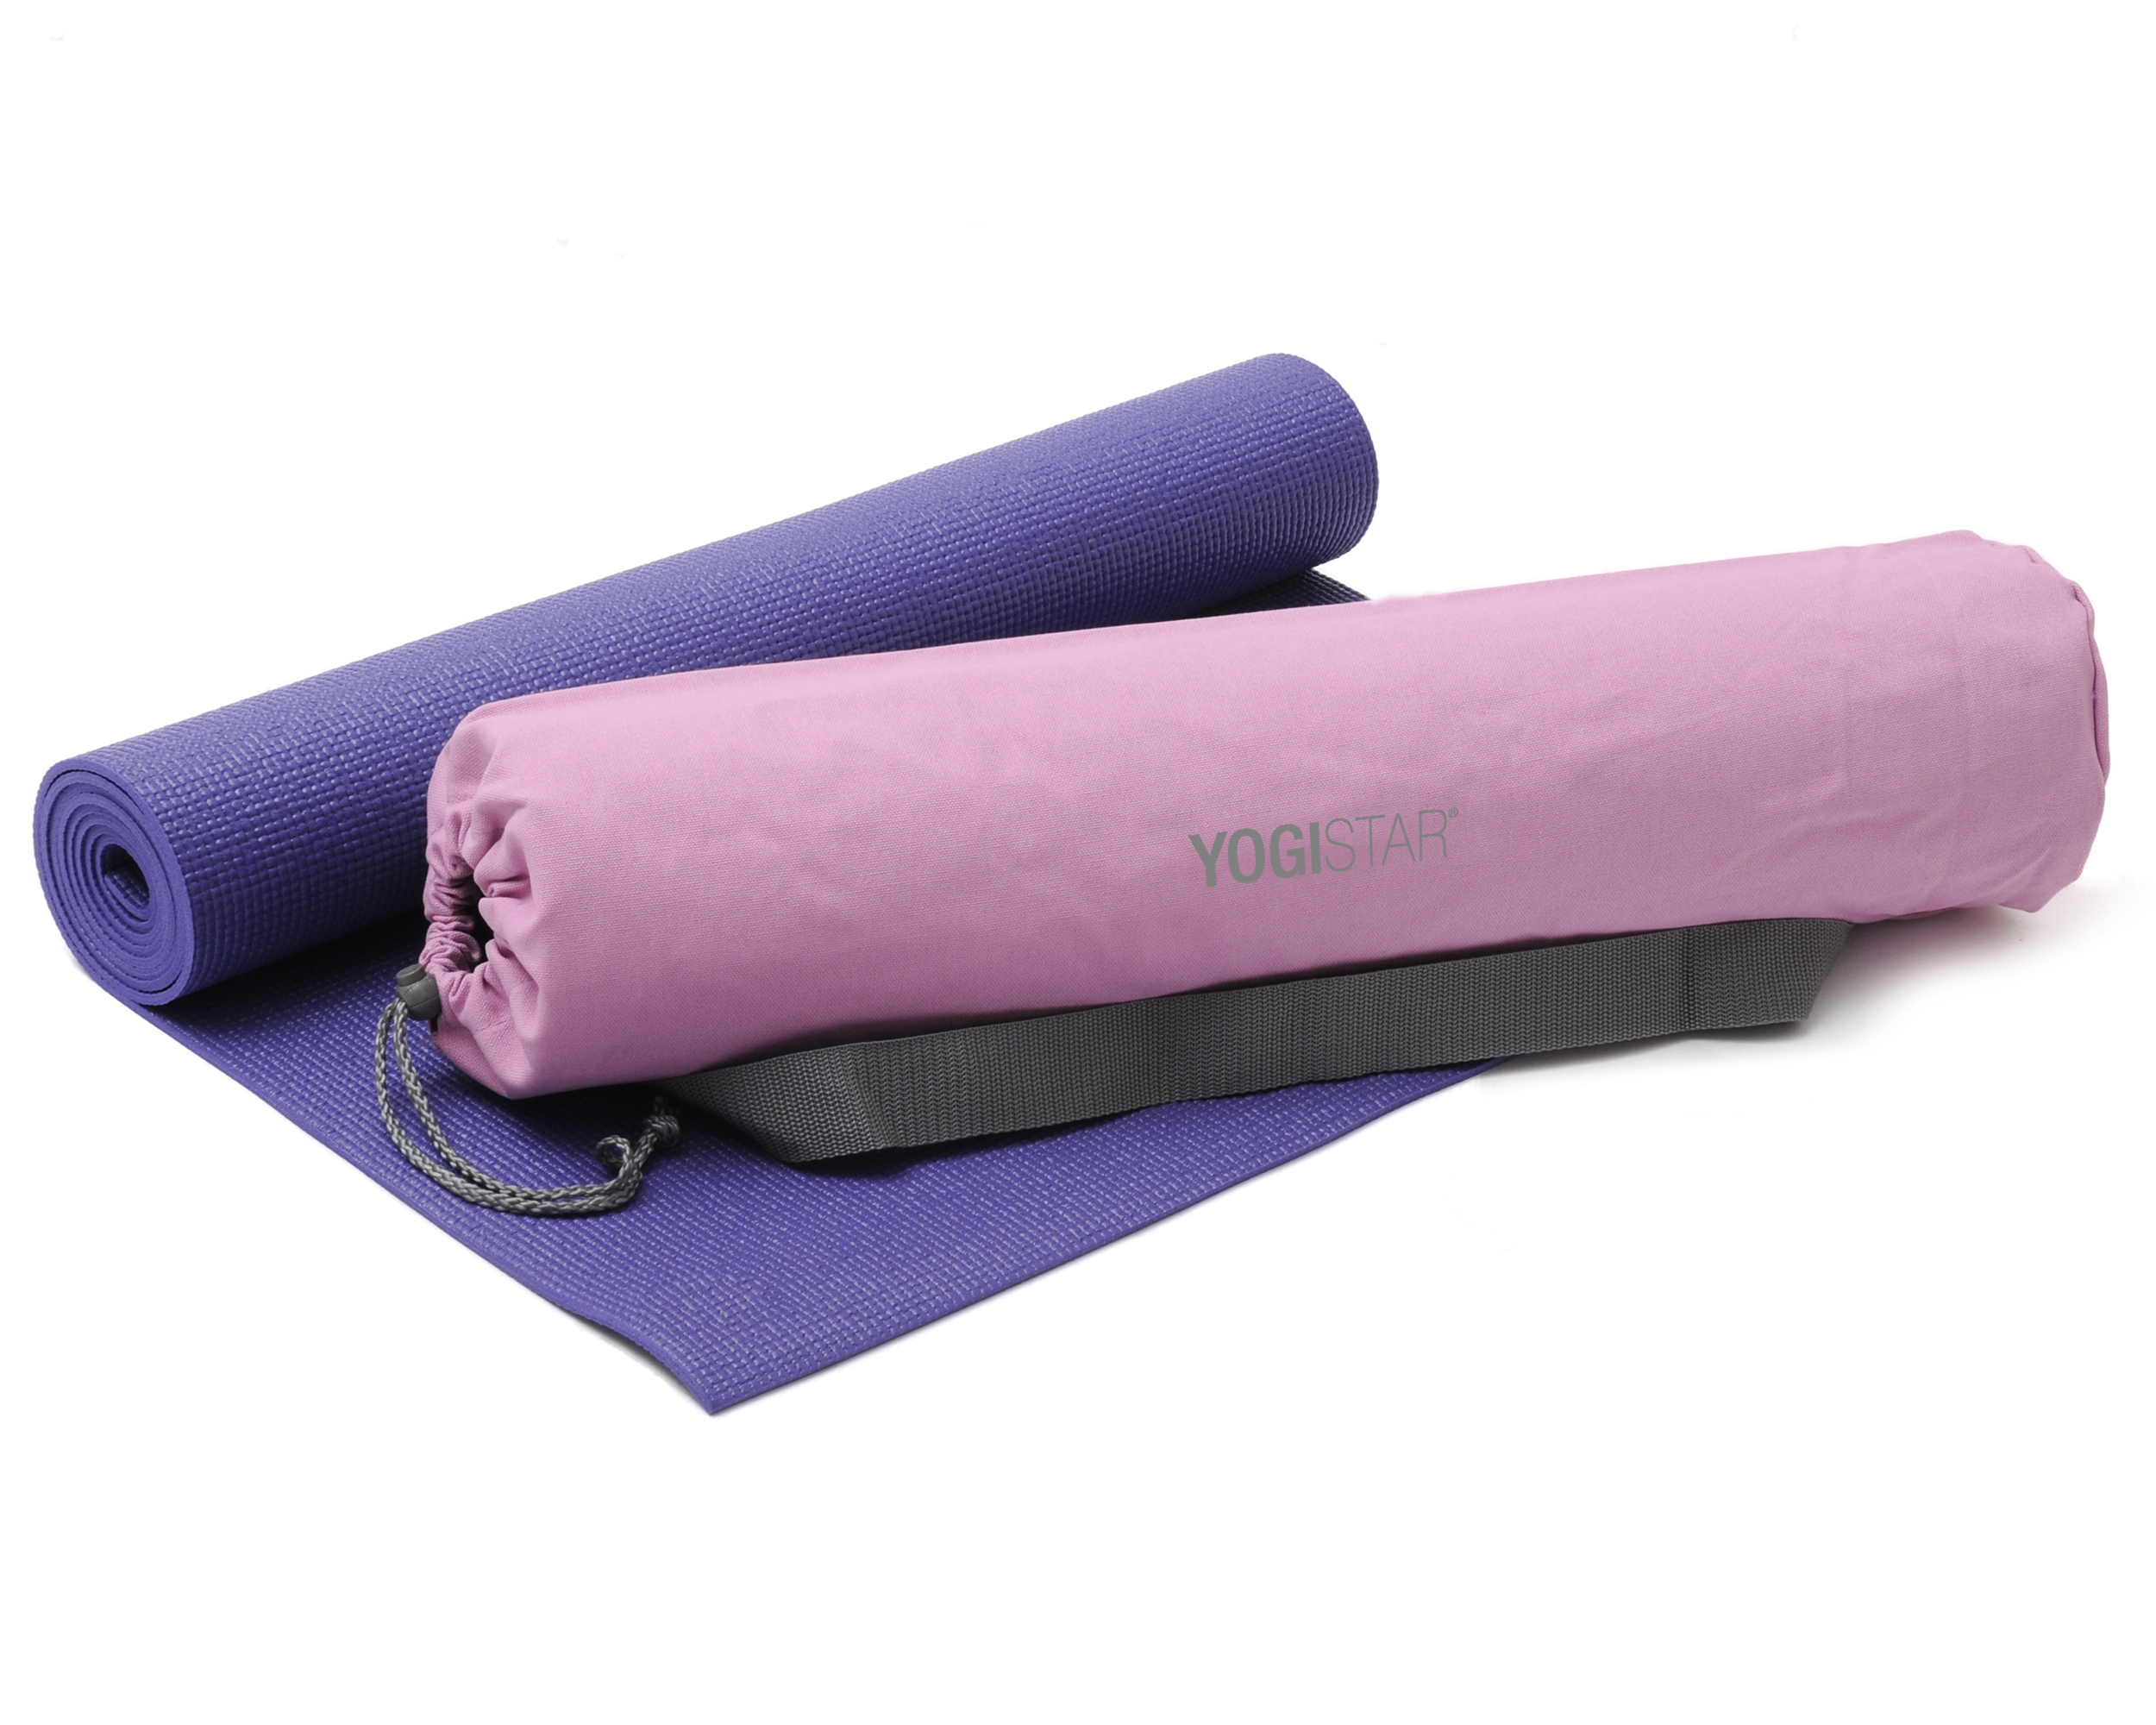 YOGISTAR.COM | Yoga-Set Starter Edition (Yoga mat + yoga bag) |  Yoga-Equipment, Yoga mats and Yoga